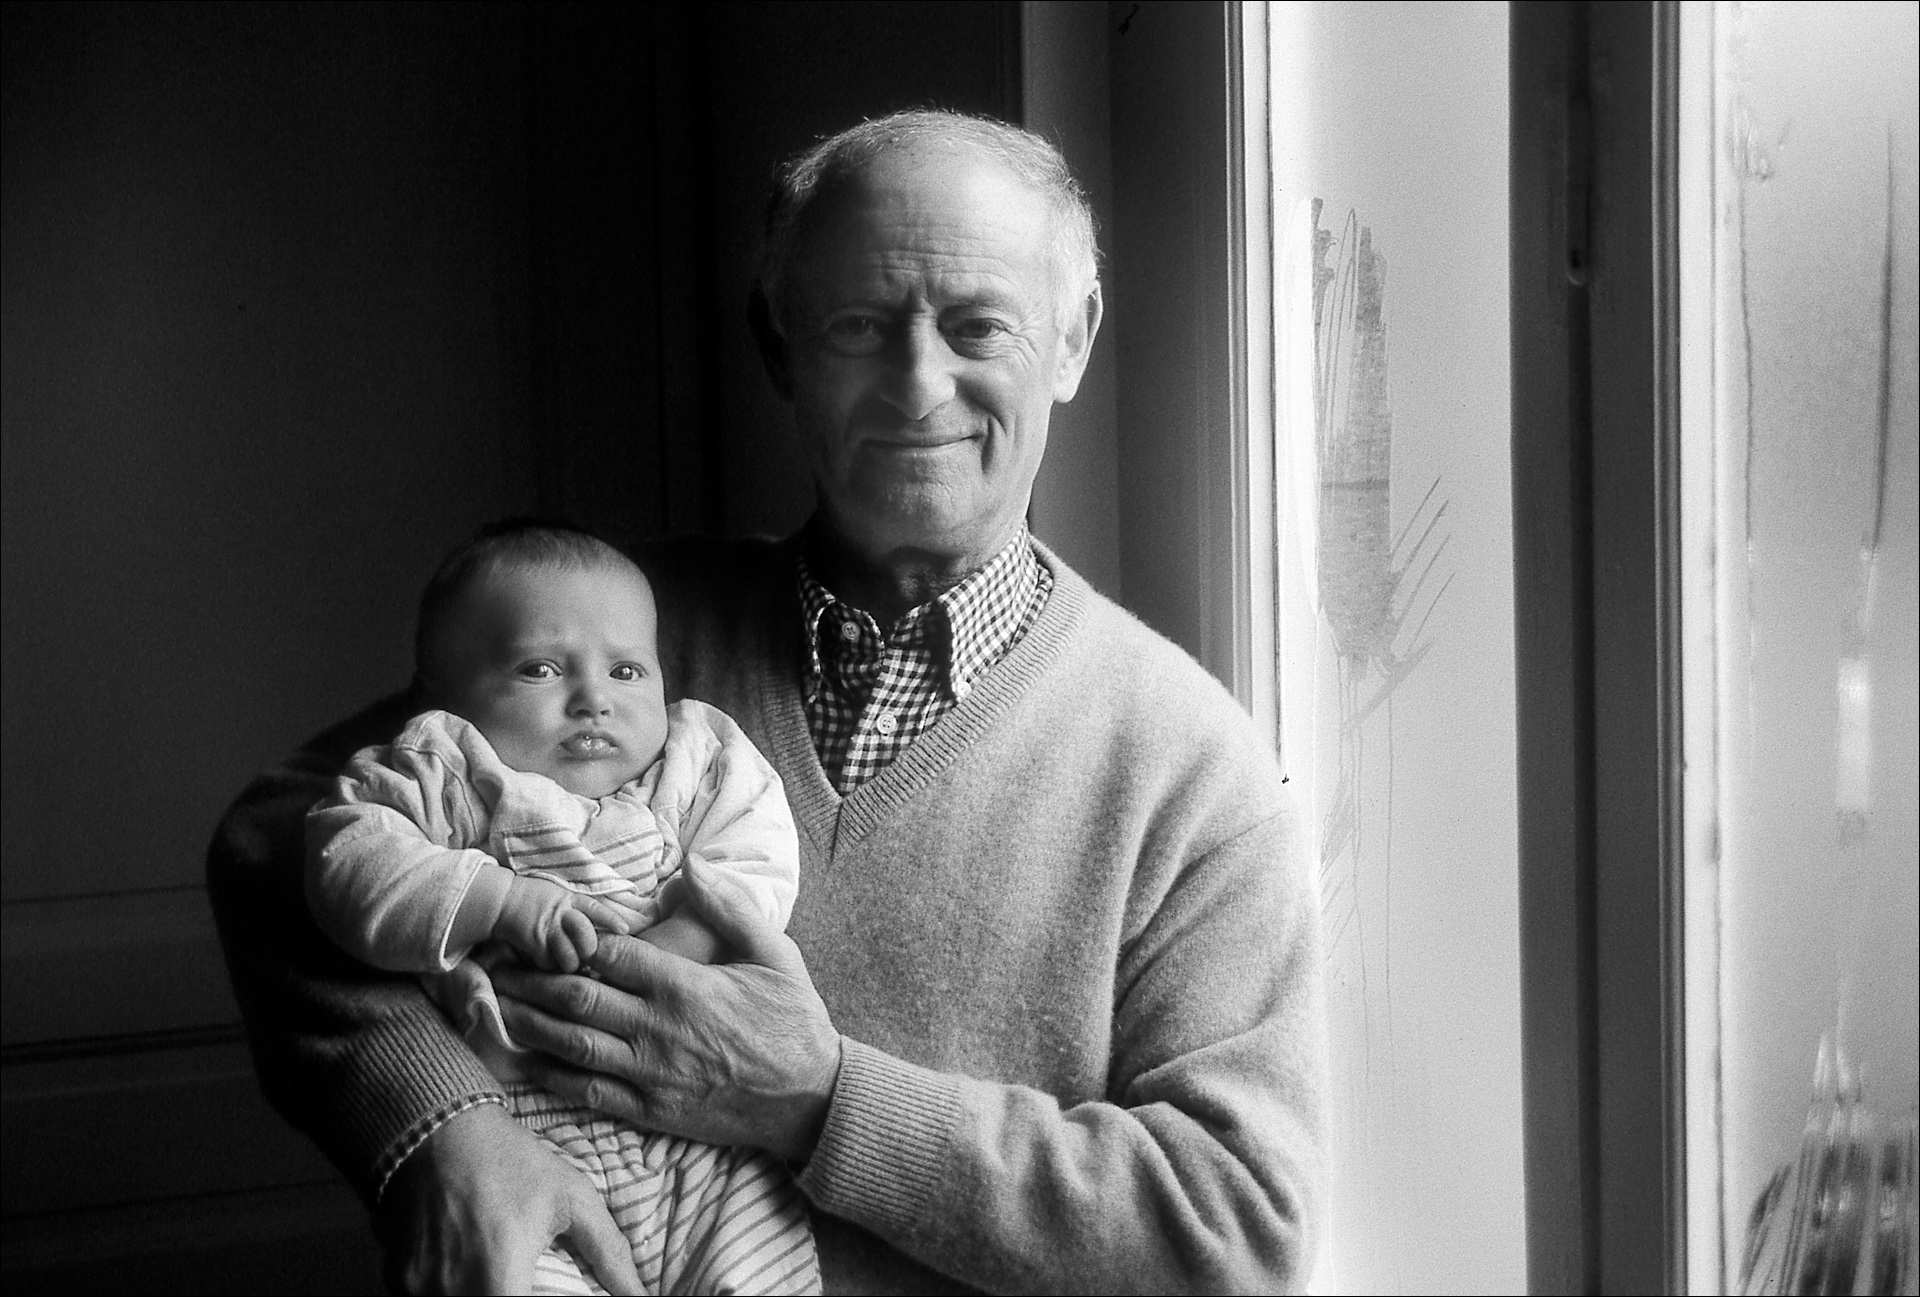 Ugo Bonani (child) Grand Father Ignace Enten, Valenciennes, France, 2002